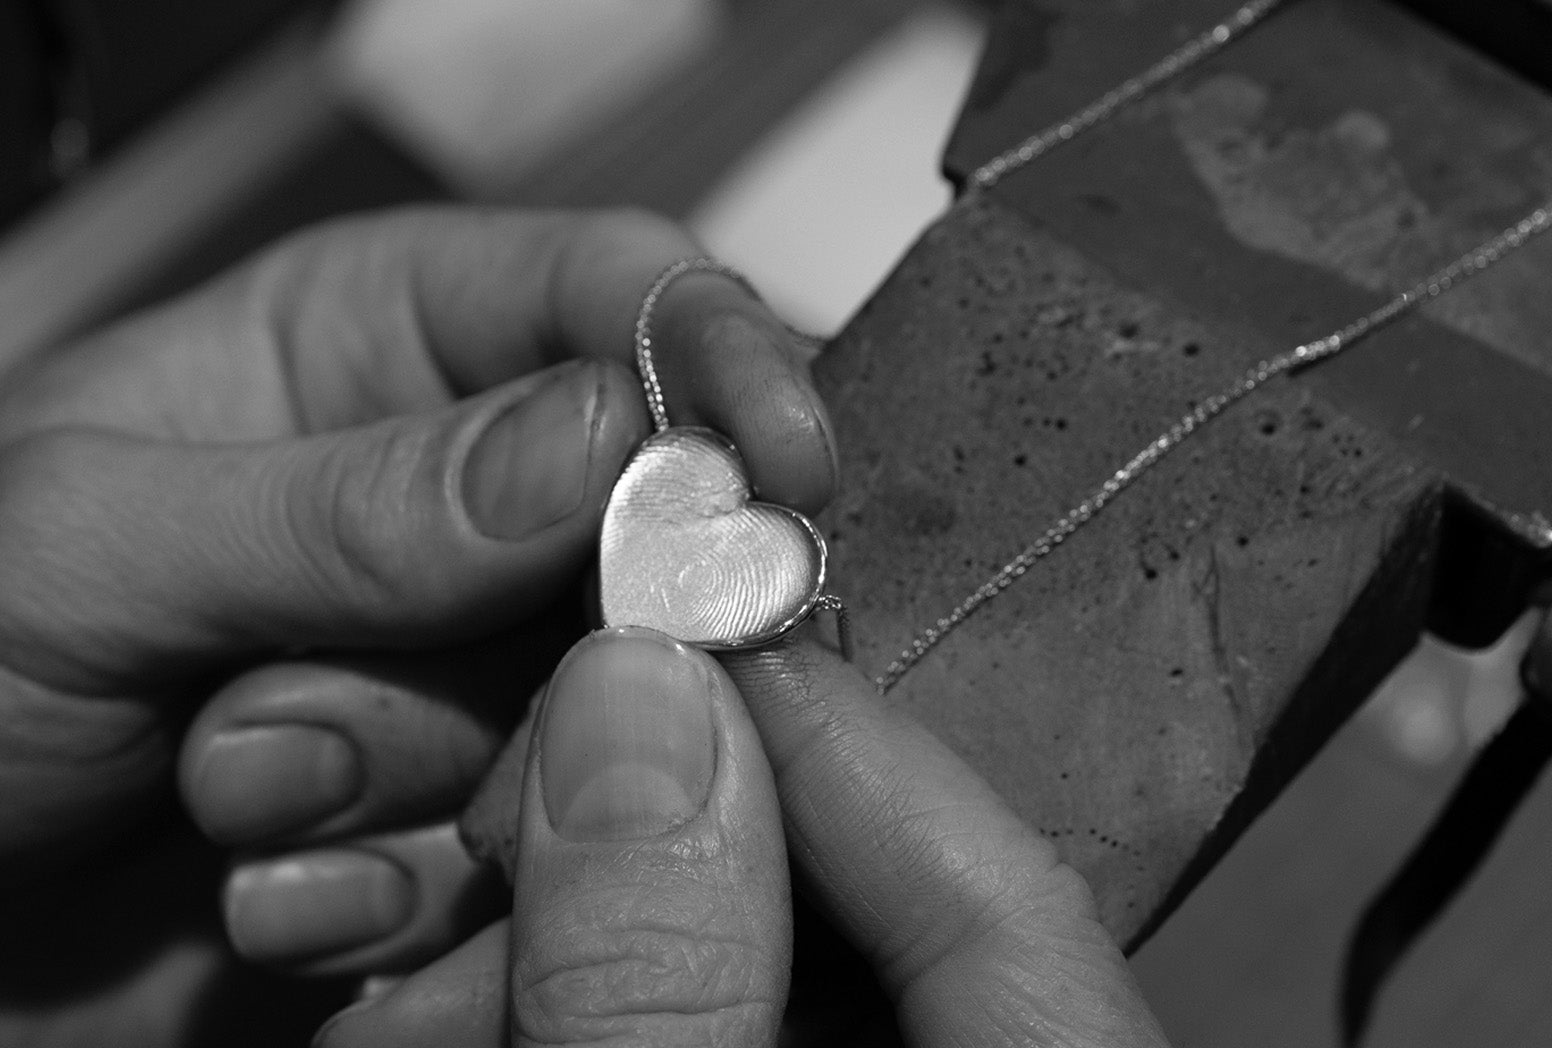 Bespoke Feature: Heart Shaped Fingerprint Pendants